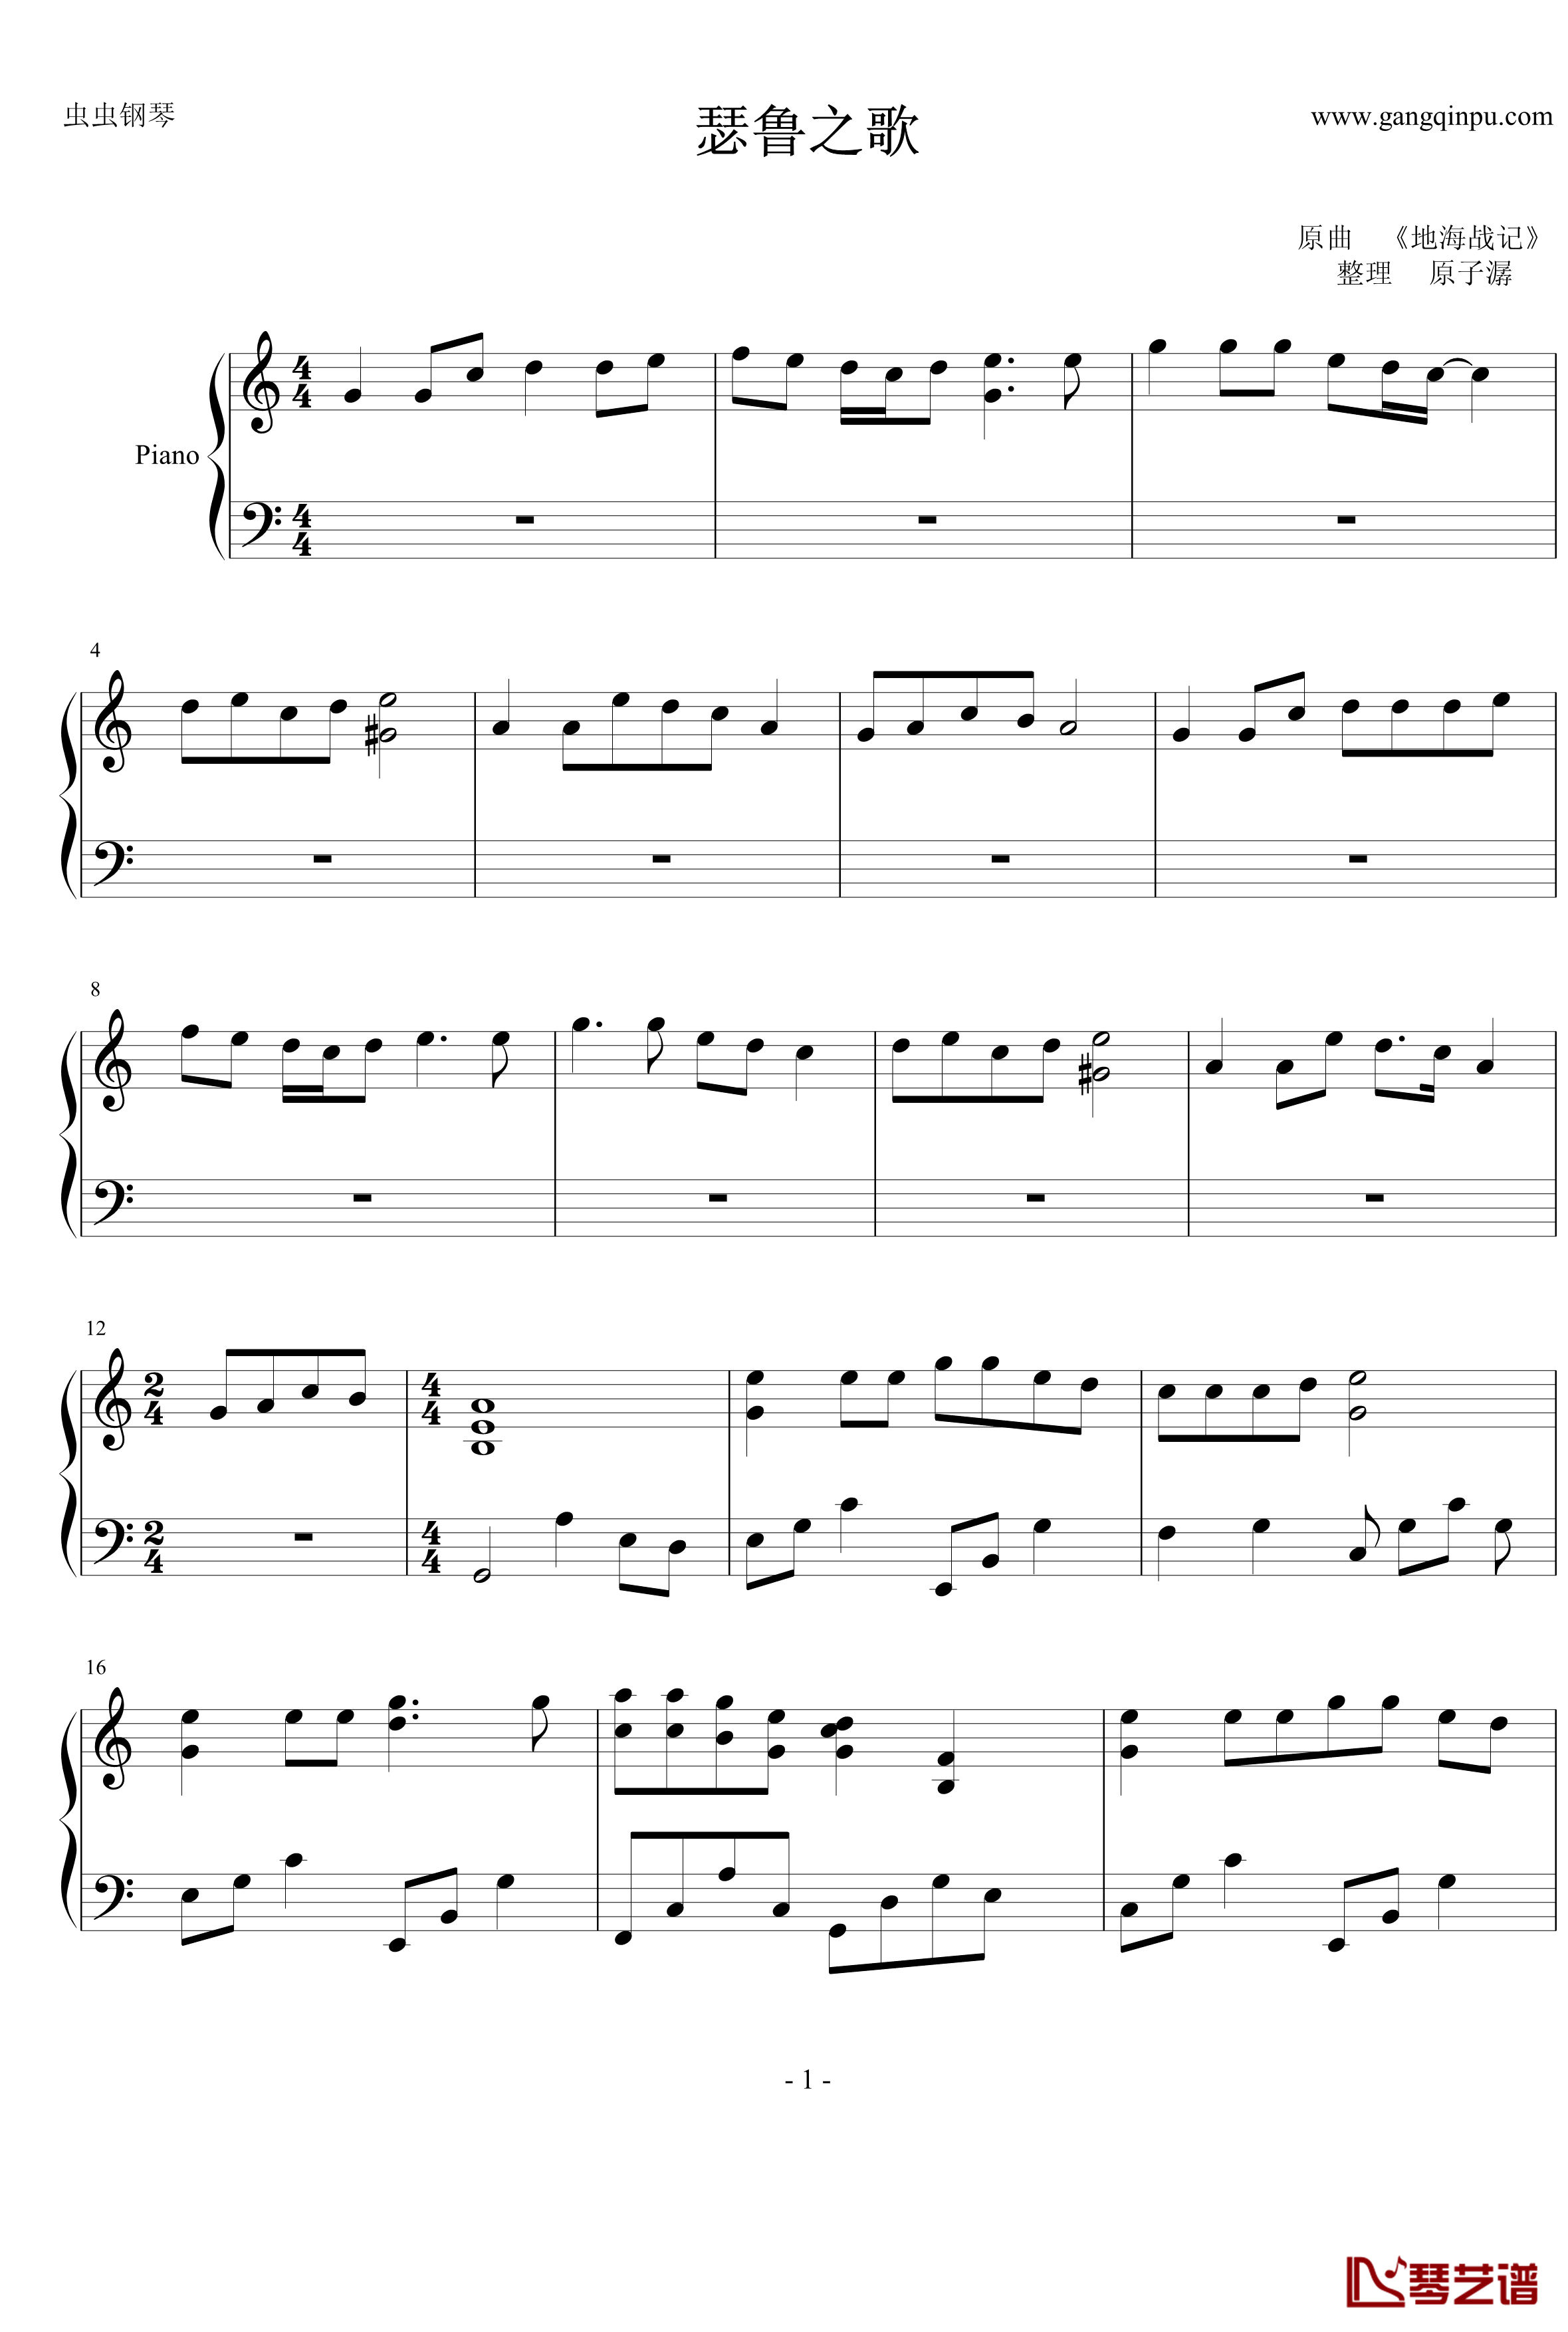 瑟鲁之歌钢琴谱-钢琴独奏版-宫崎吾朗1